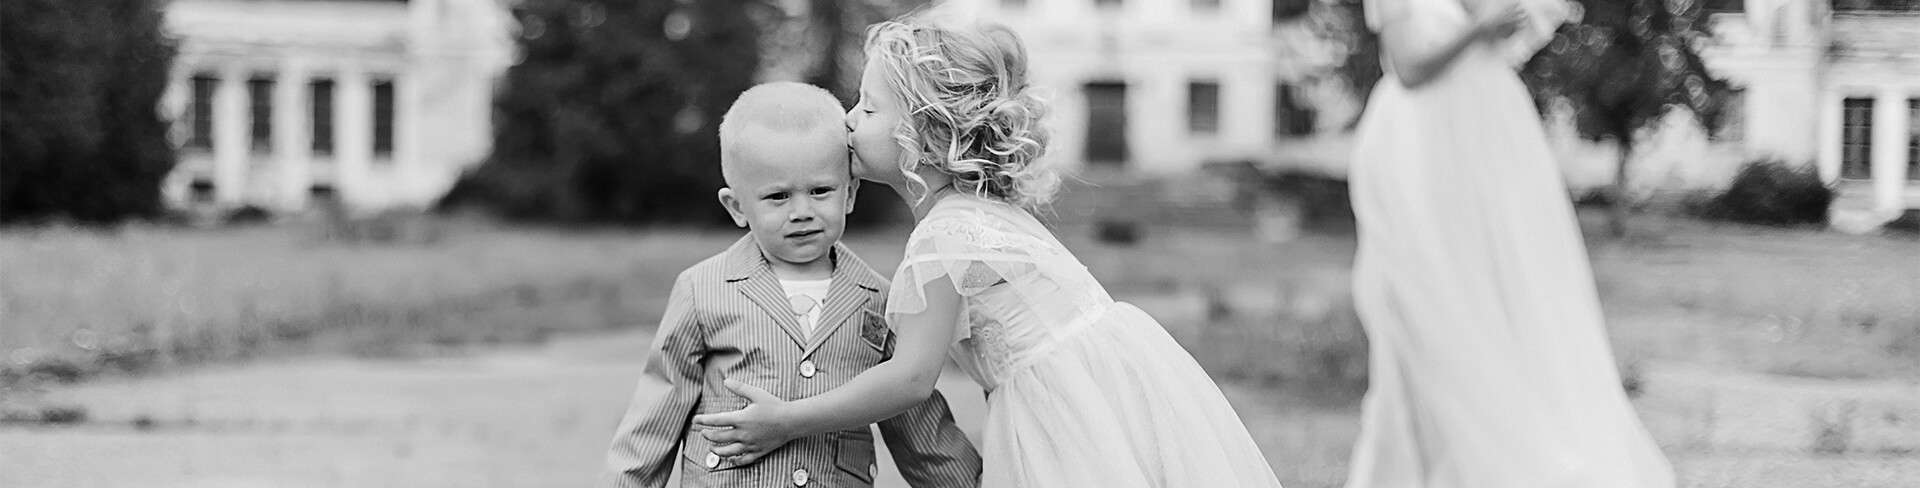 testata cme vestire bambini matrimonio cerimonia